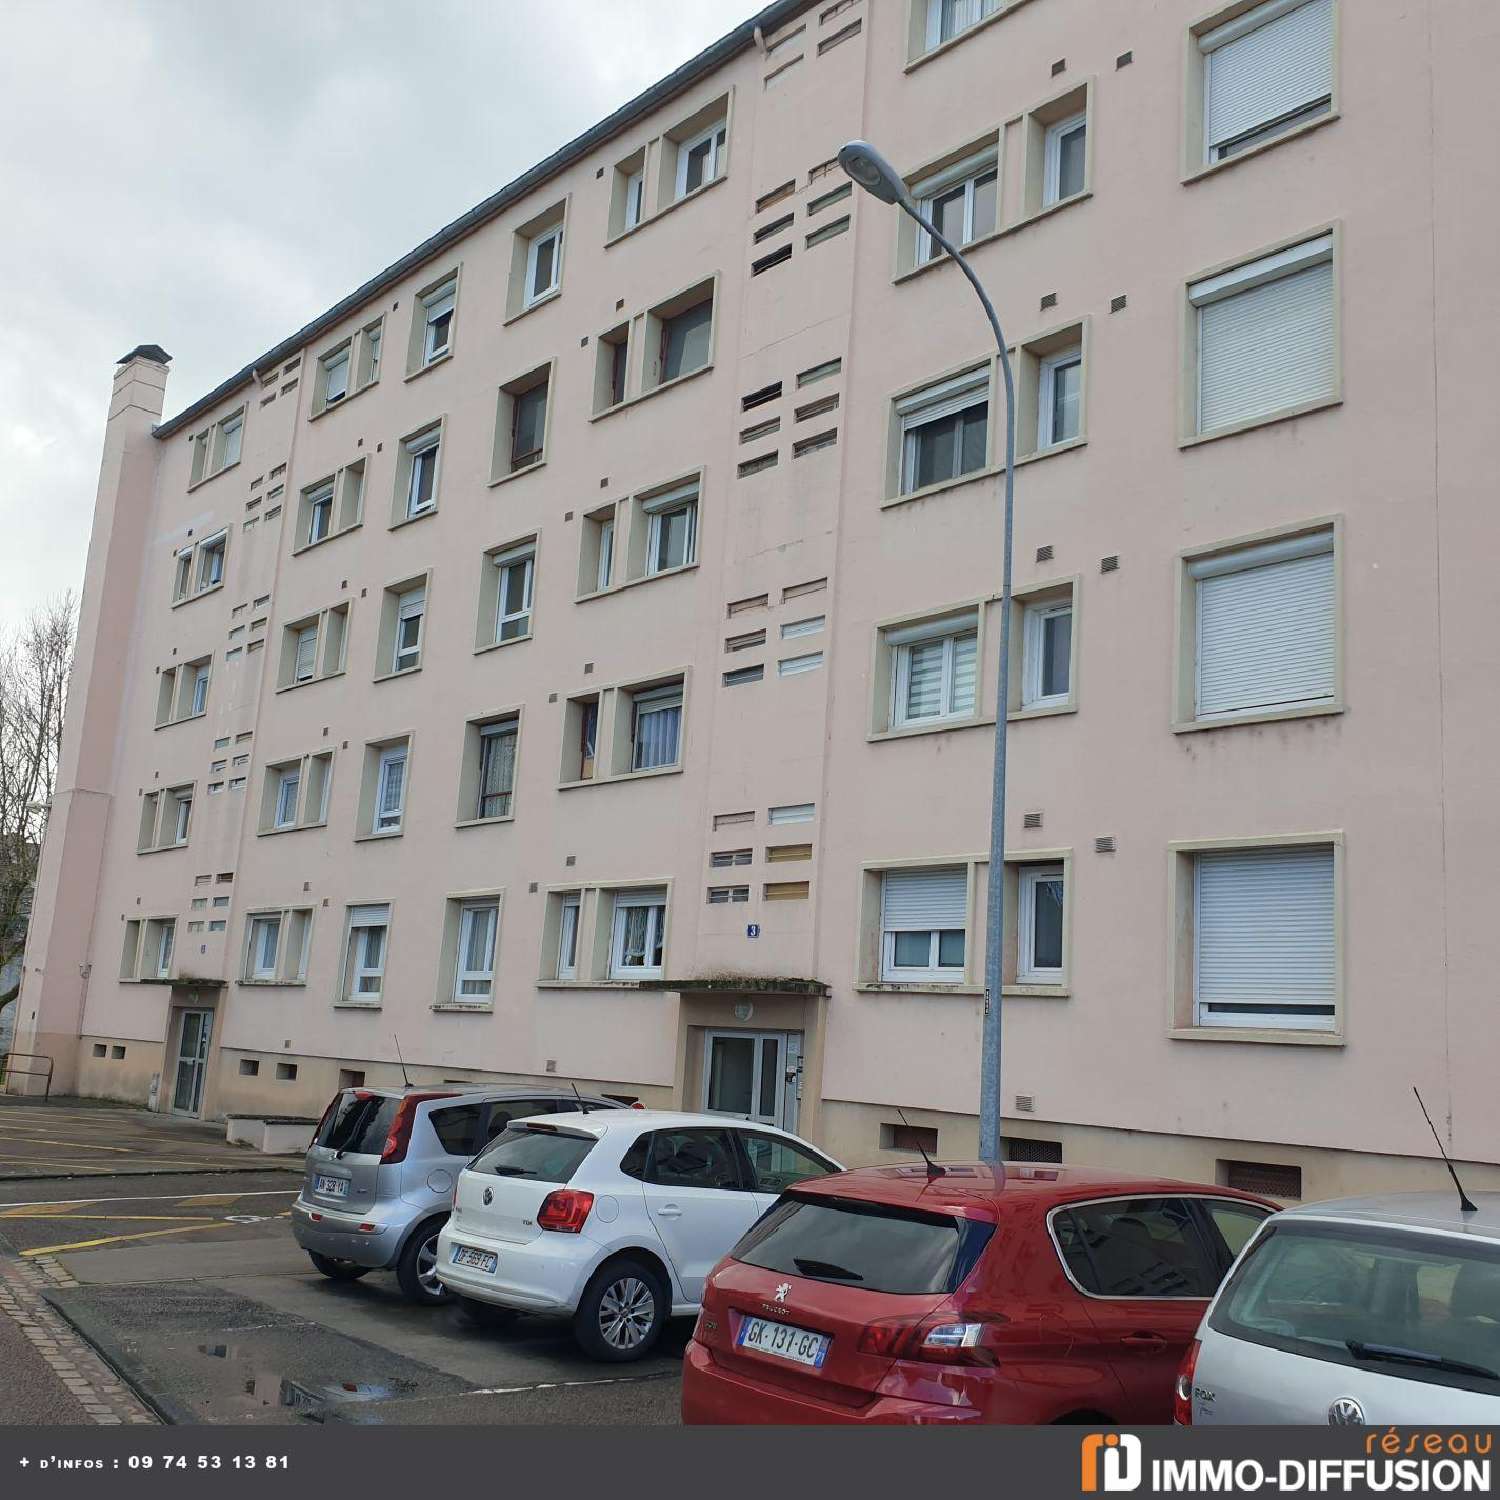  à vendre appartement Lux Saône-et-Loire 2